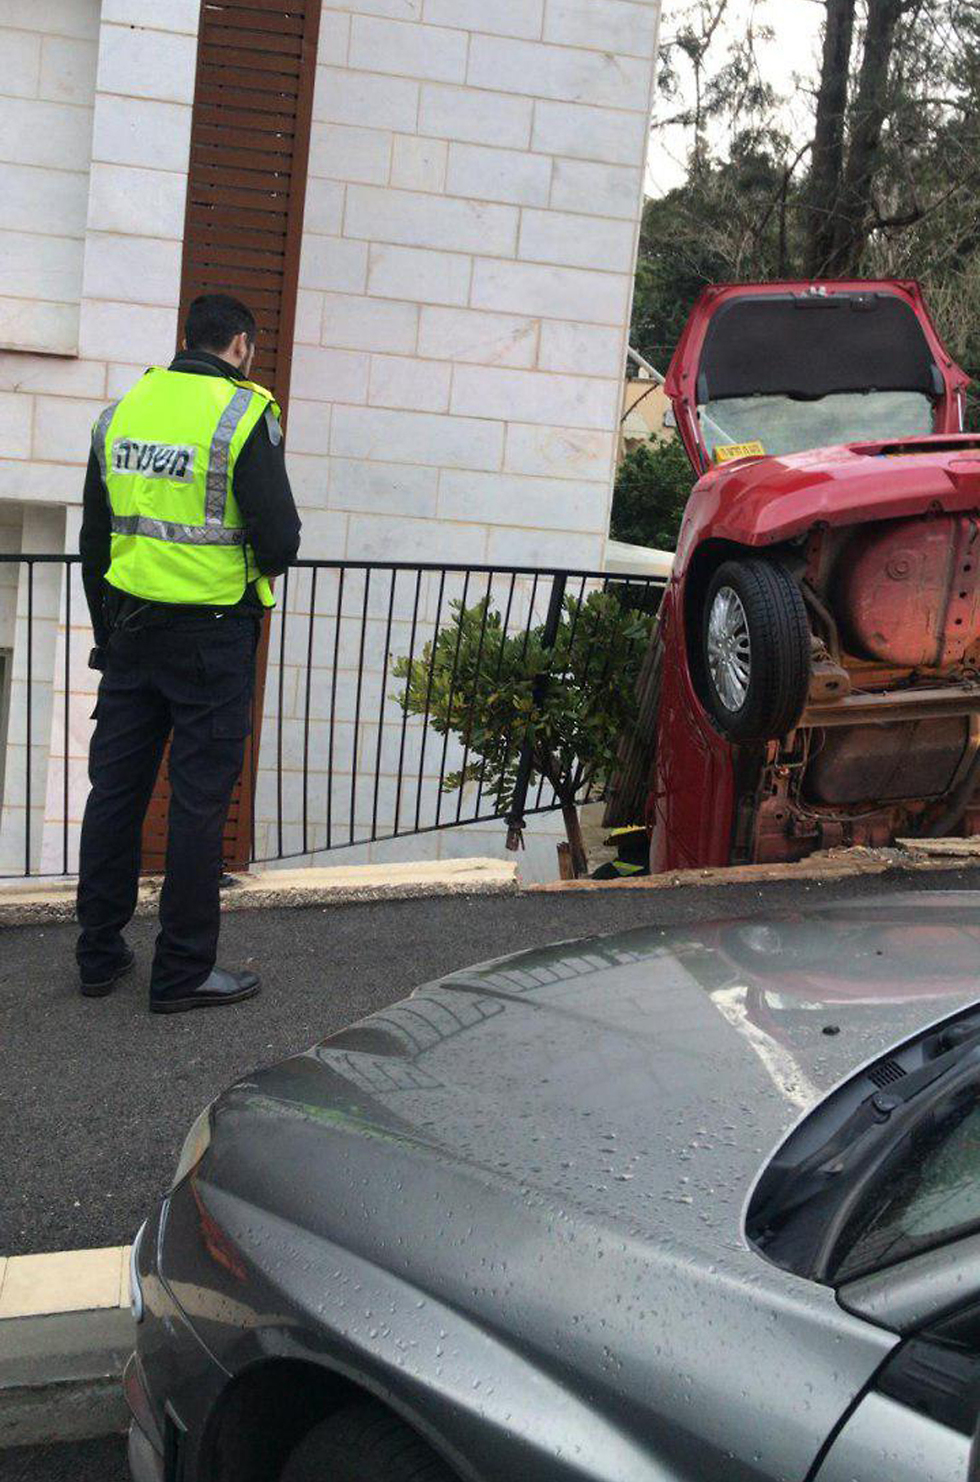 תאונה תאונה דרכים רכב פרטי נכנס בדירת בדירה מרפסת חיפה  (צילום: דוברות המשטרה)